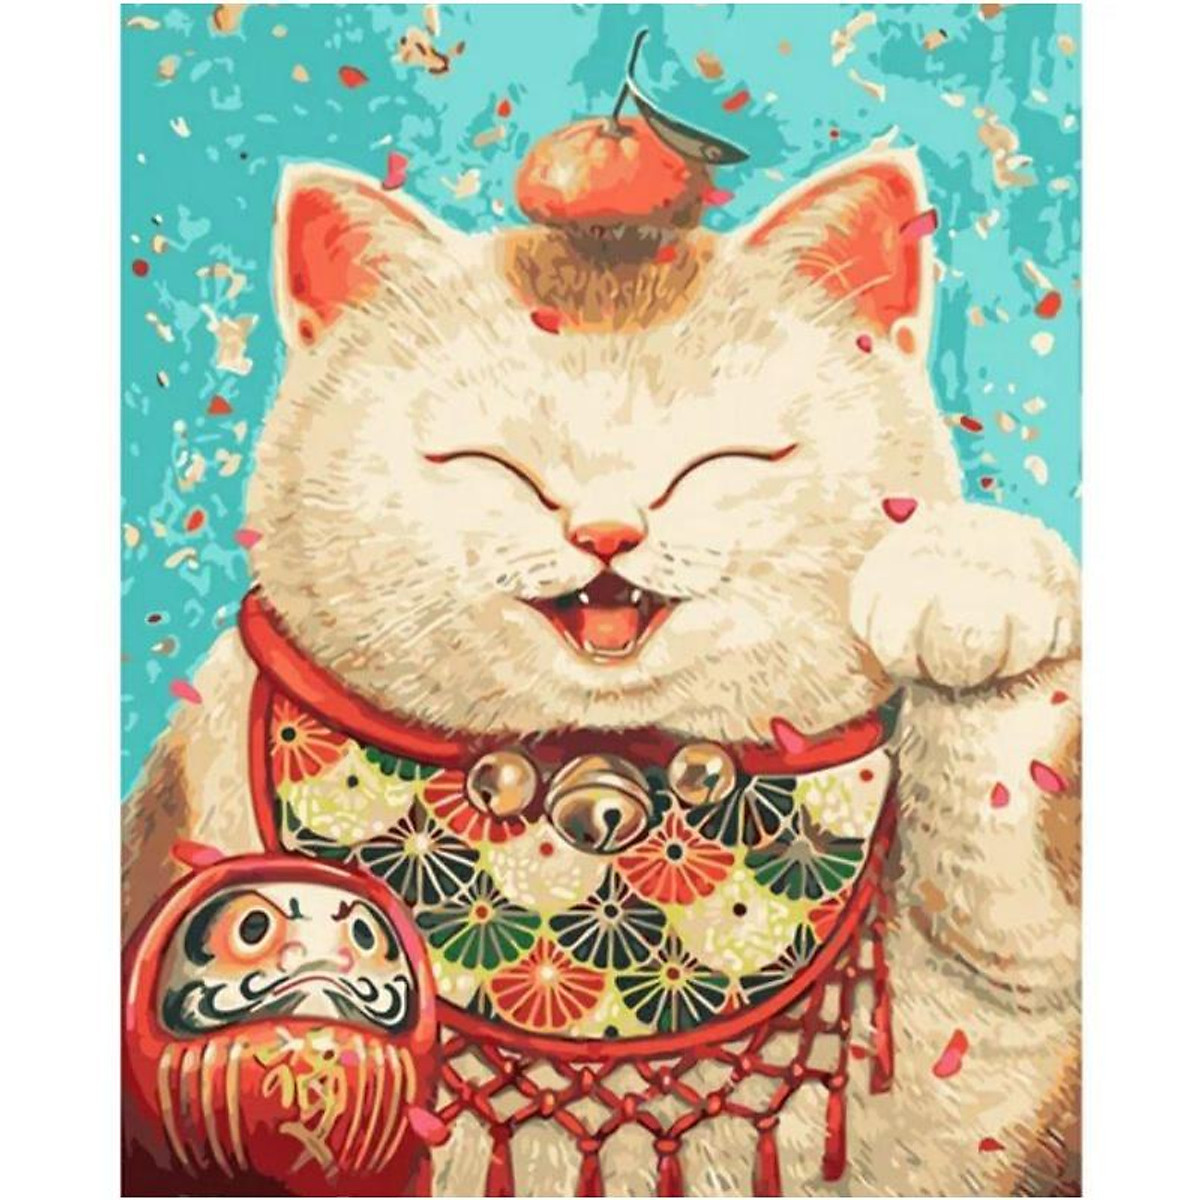 Tranh mèo sơn dầu là món đồ trang trí phòng khách ấn tượng, được vẽ bằng sơn dầu sáng tạo tạo ra những chi tiết tuyệt đẹp của con mèo. Với màu sắc tươi sáng và tinh tế, tranh mèo sơn dầu sẽ giúp tôn lên phong cách trang trí của gia đình bạn như chưa từng có.